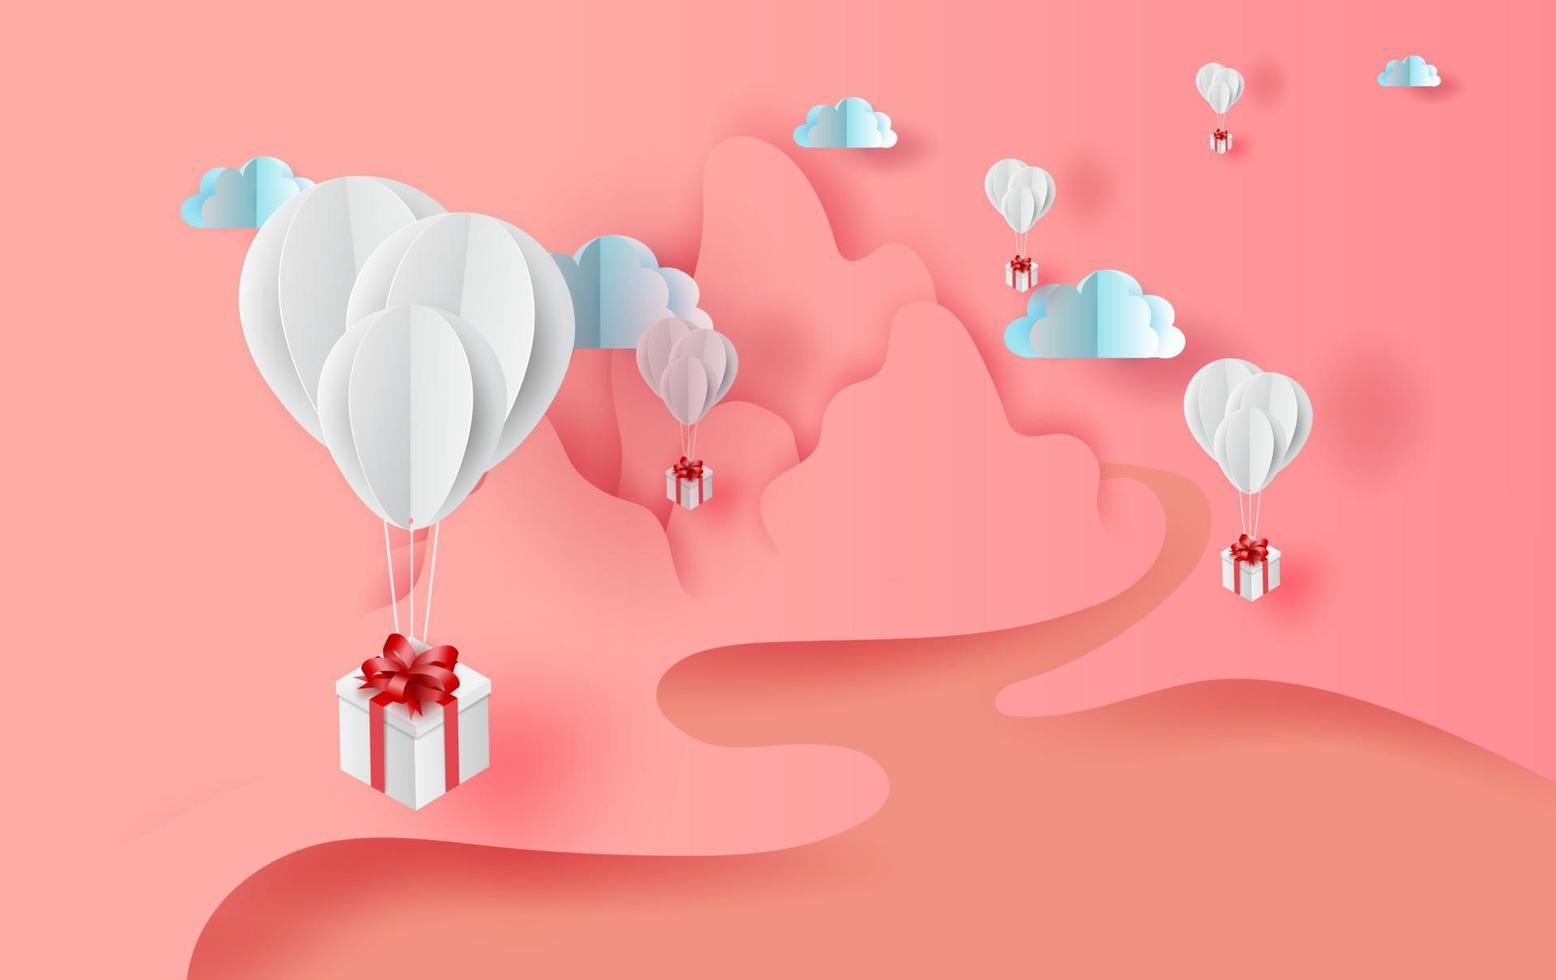 3D papper konst av vita ballonger gåva flytande med natur landskap visa scen plats för din text utrymme söt rosa färg pastell bakgrund. Alla hjärtans dag concept.elements vektor för gratulationskort.